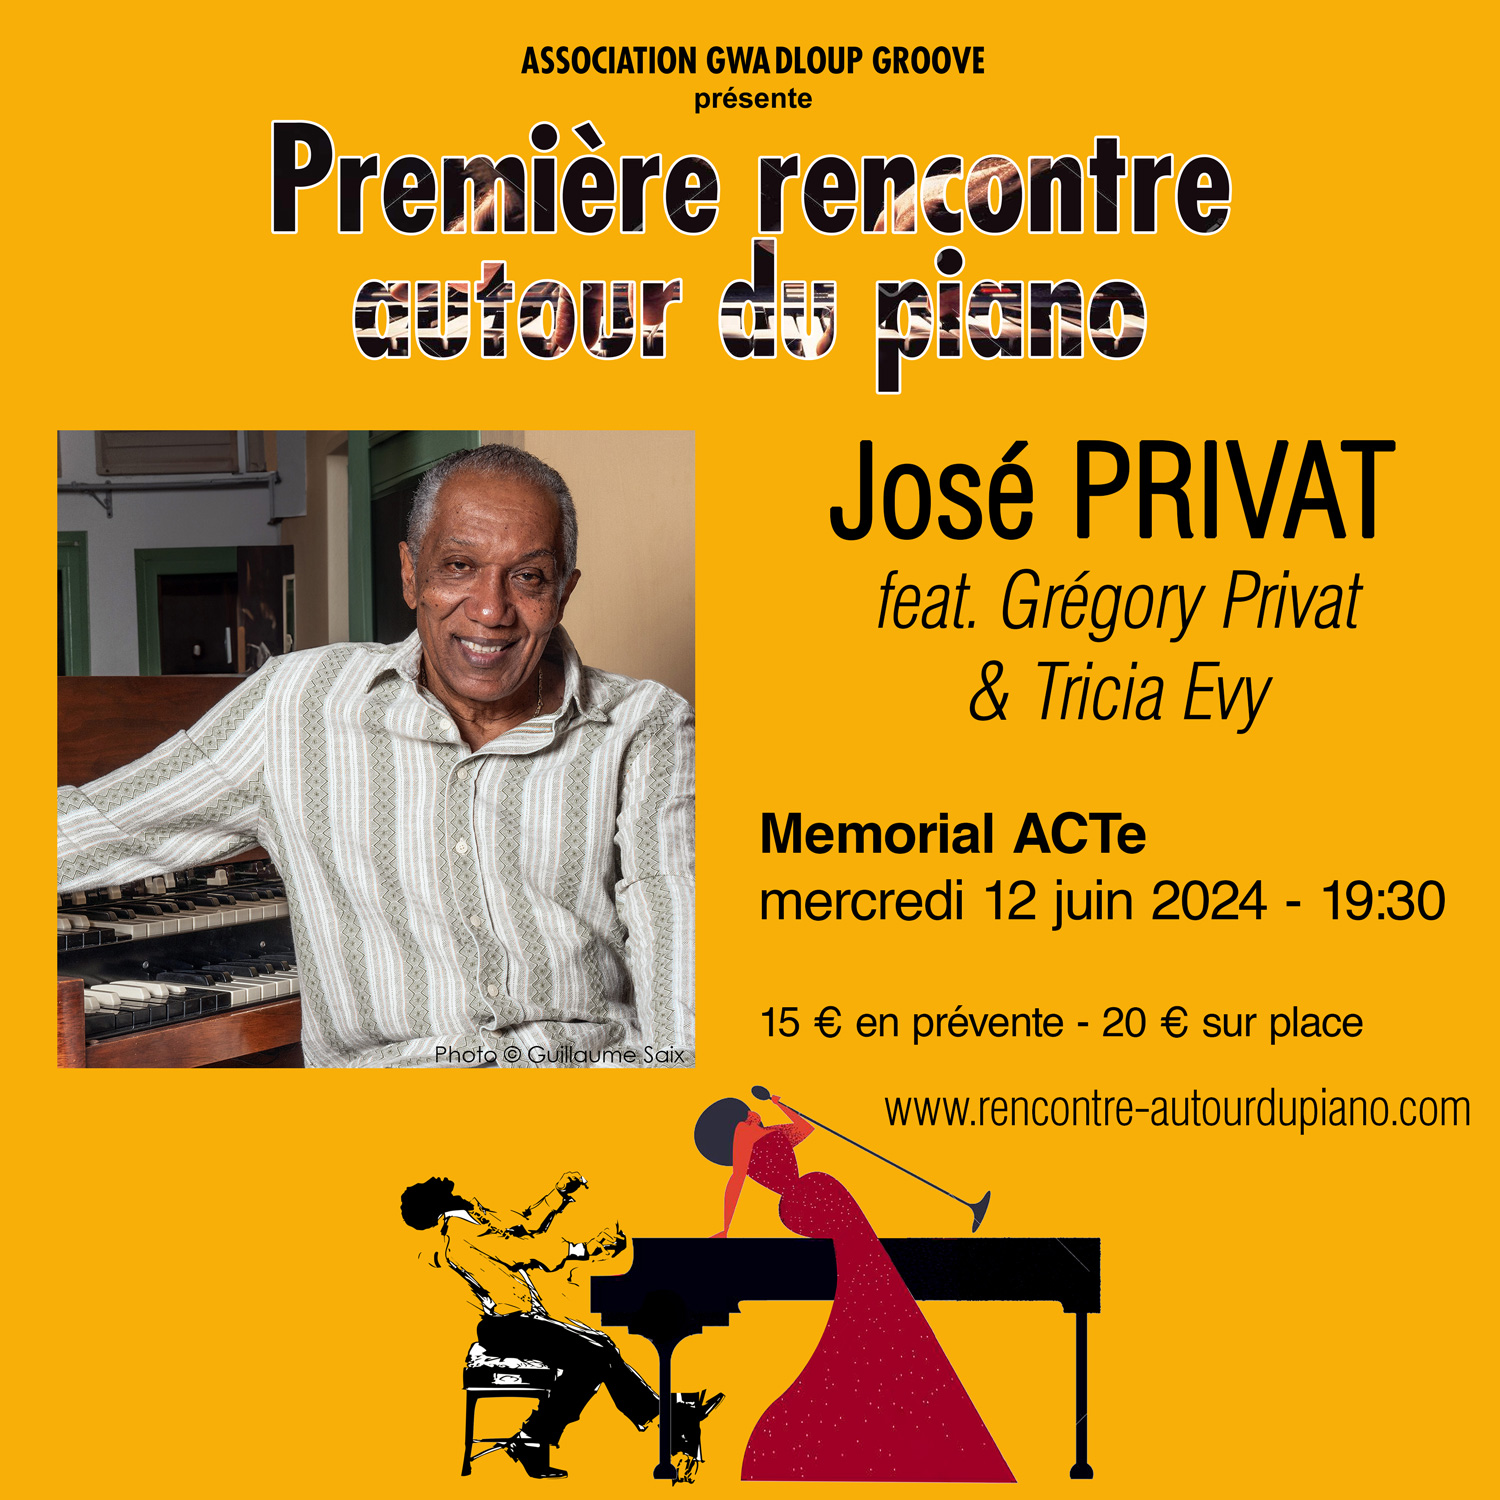 José Privat feat. Grégory Privat & Tricia Evy #FestivalPremiereRencontreAutourDuPiano16